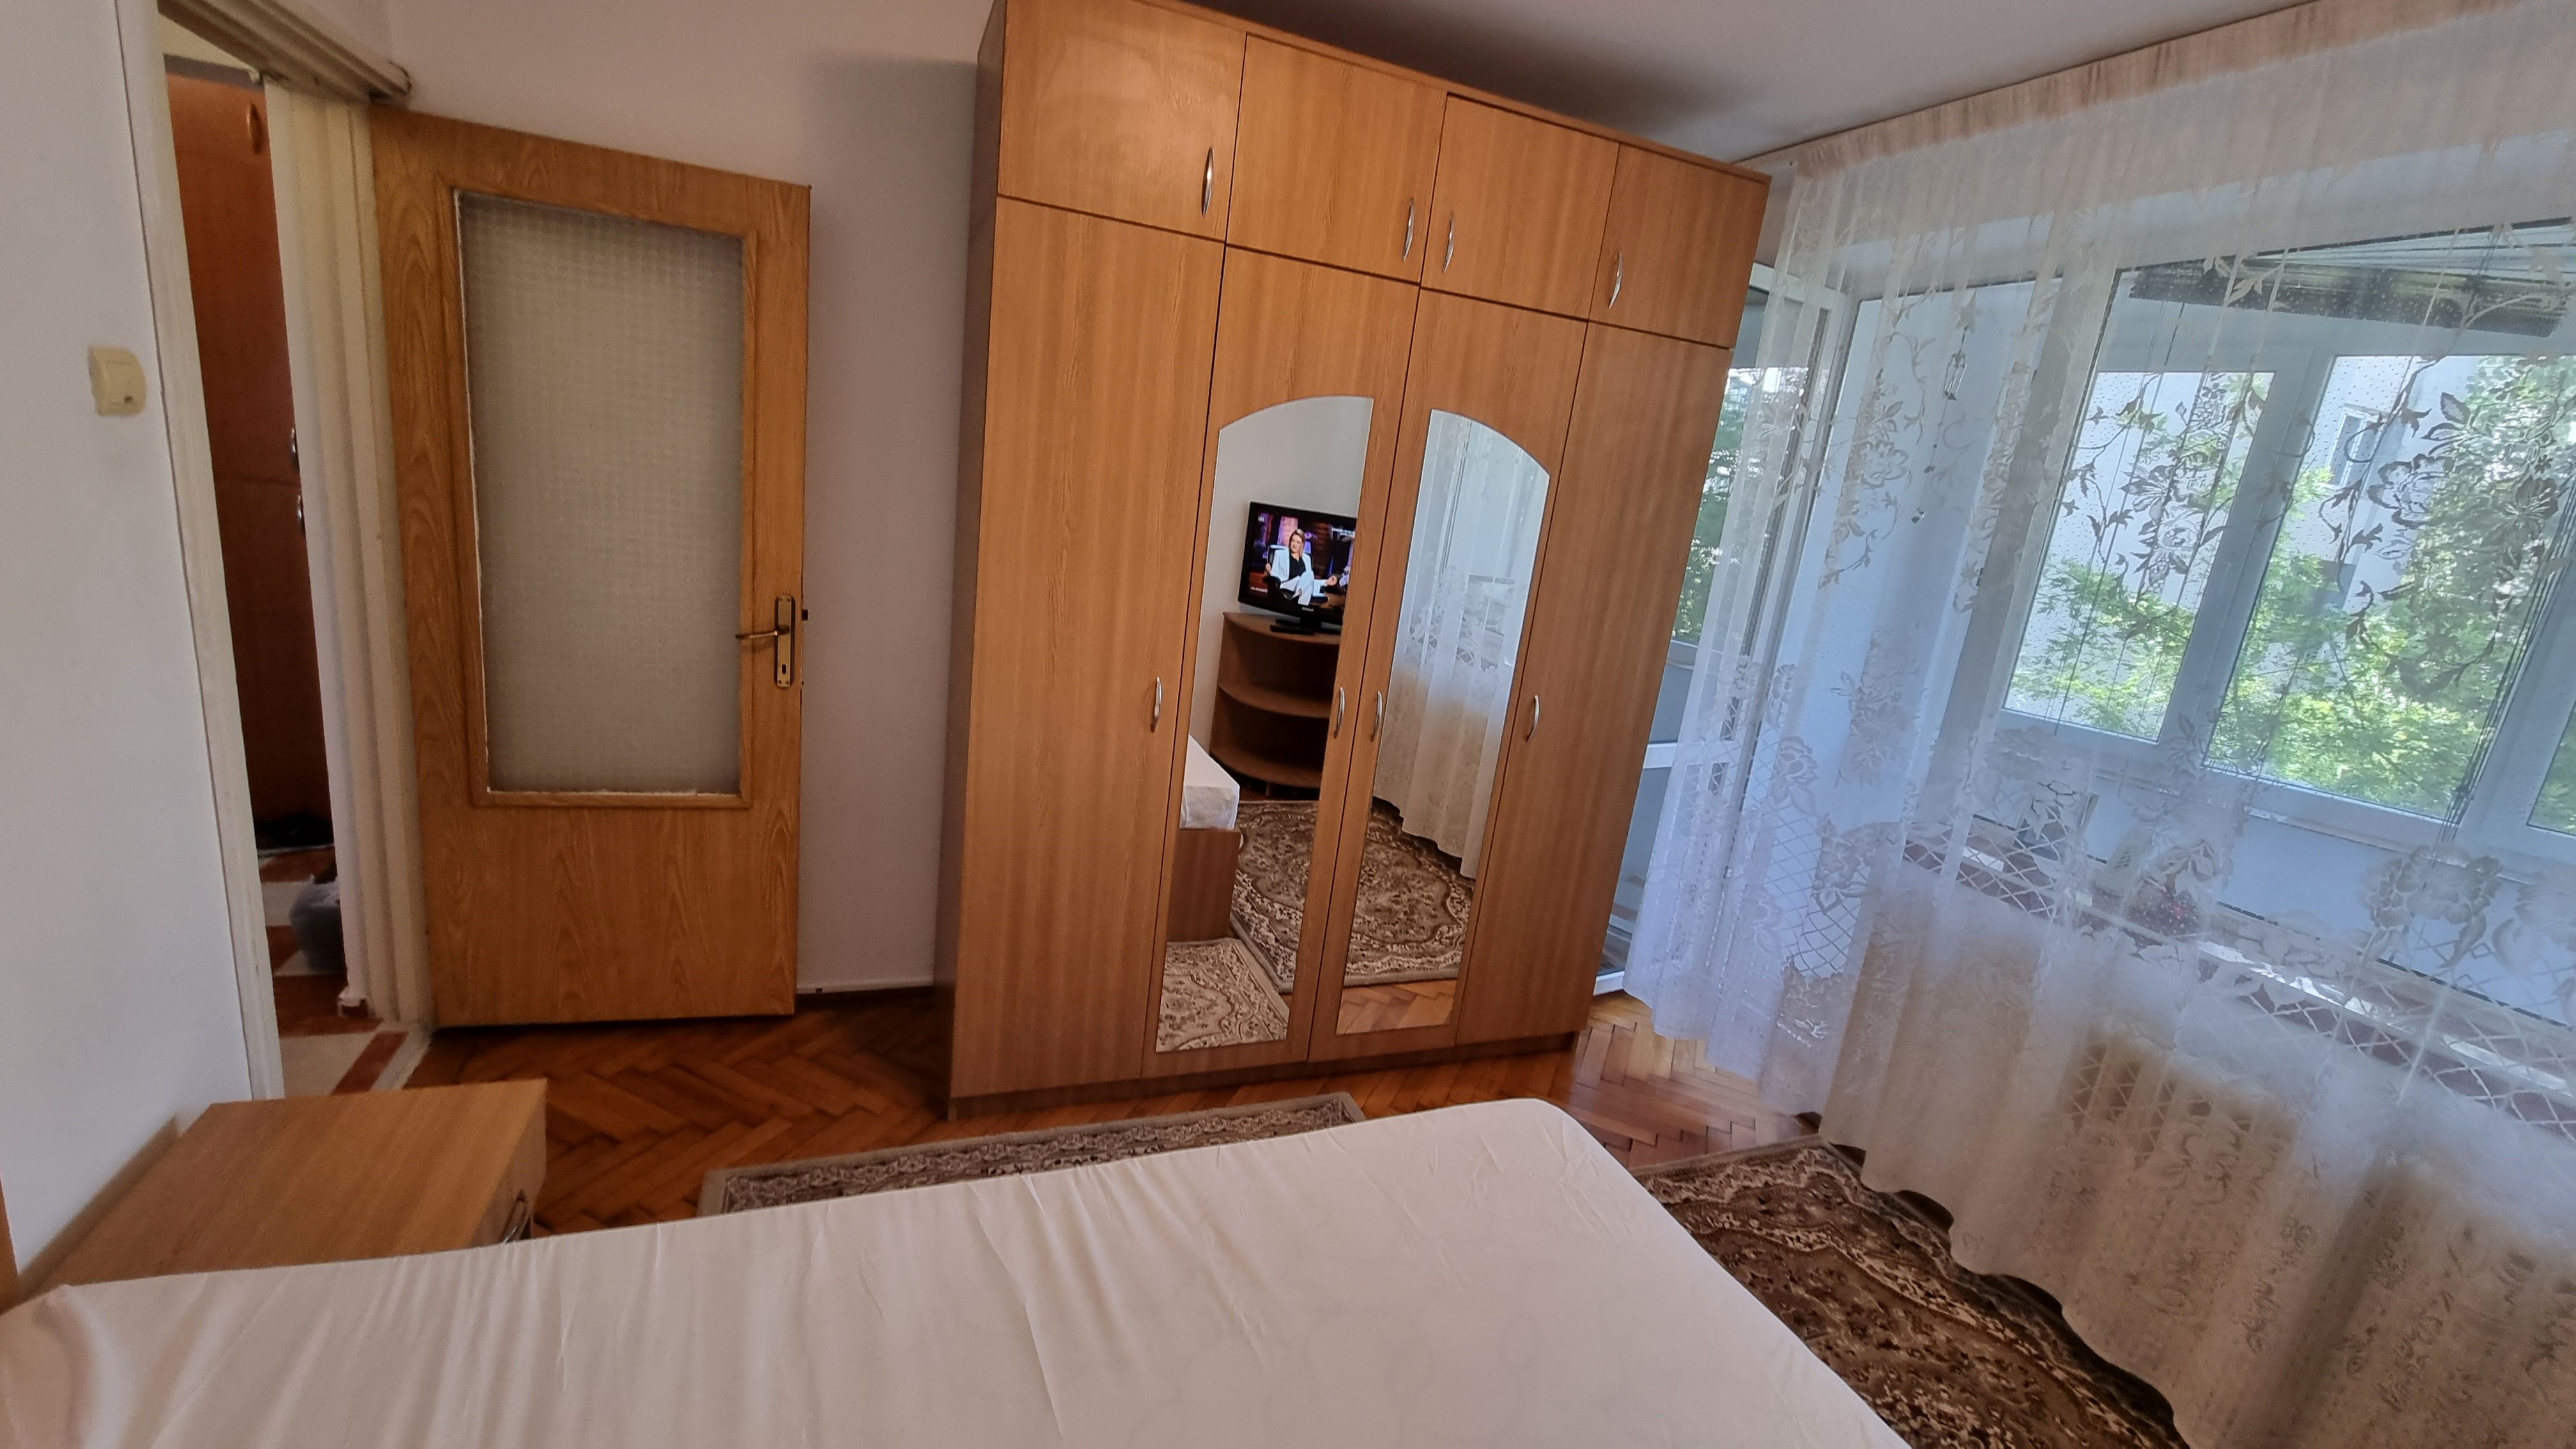 Inchiriere apartament 2 camere Piata Sudului, Bucuresti